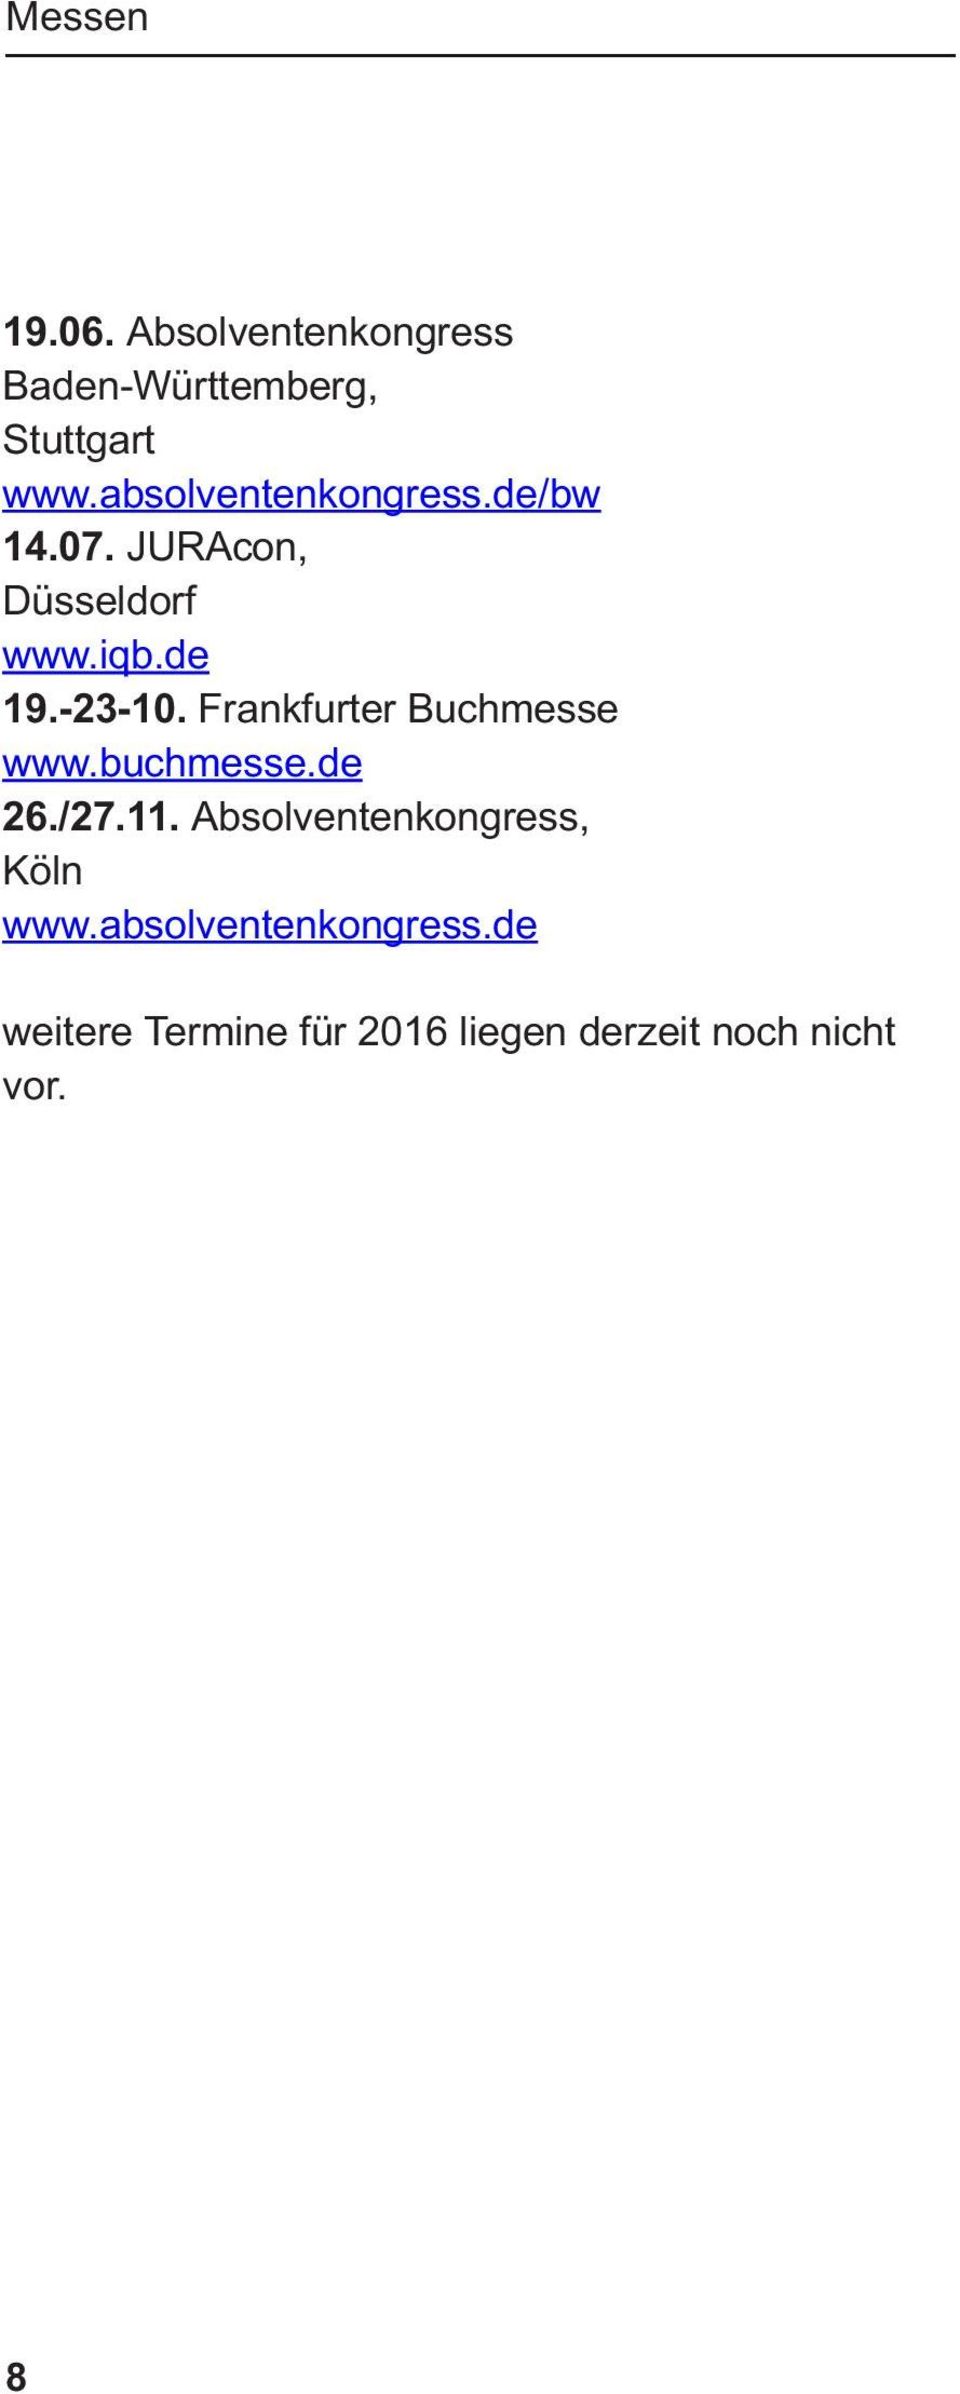 Frankfurter Buchmesse www.buchmesse.de 26./27.11.